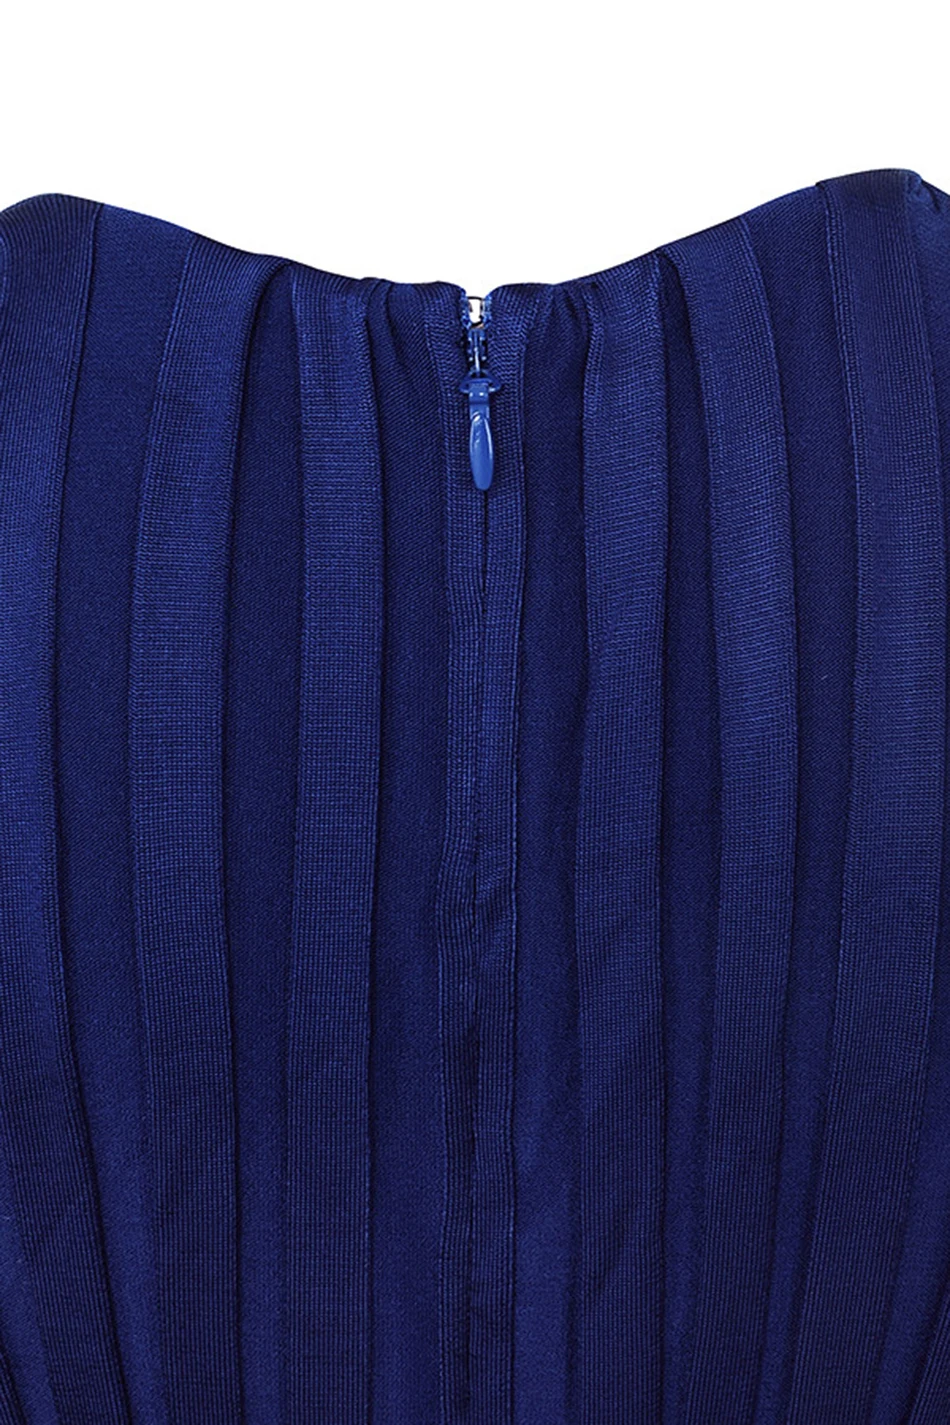 Темно-синий полная длина Зимний sexy бинты широкие брюки комбинезон Длинные рукава v-образным вырезом Элегантный Bodycon комбинезон знаменитости вечерние комбинезон